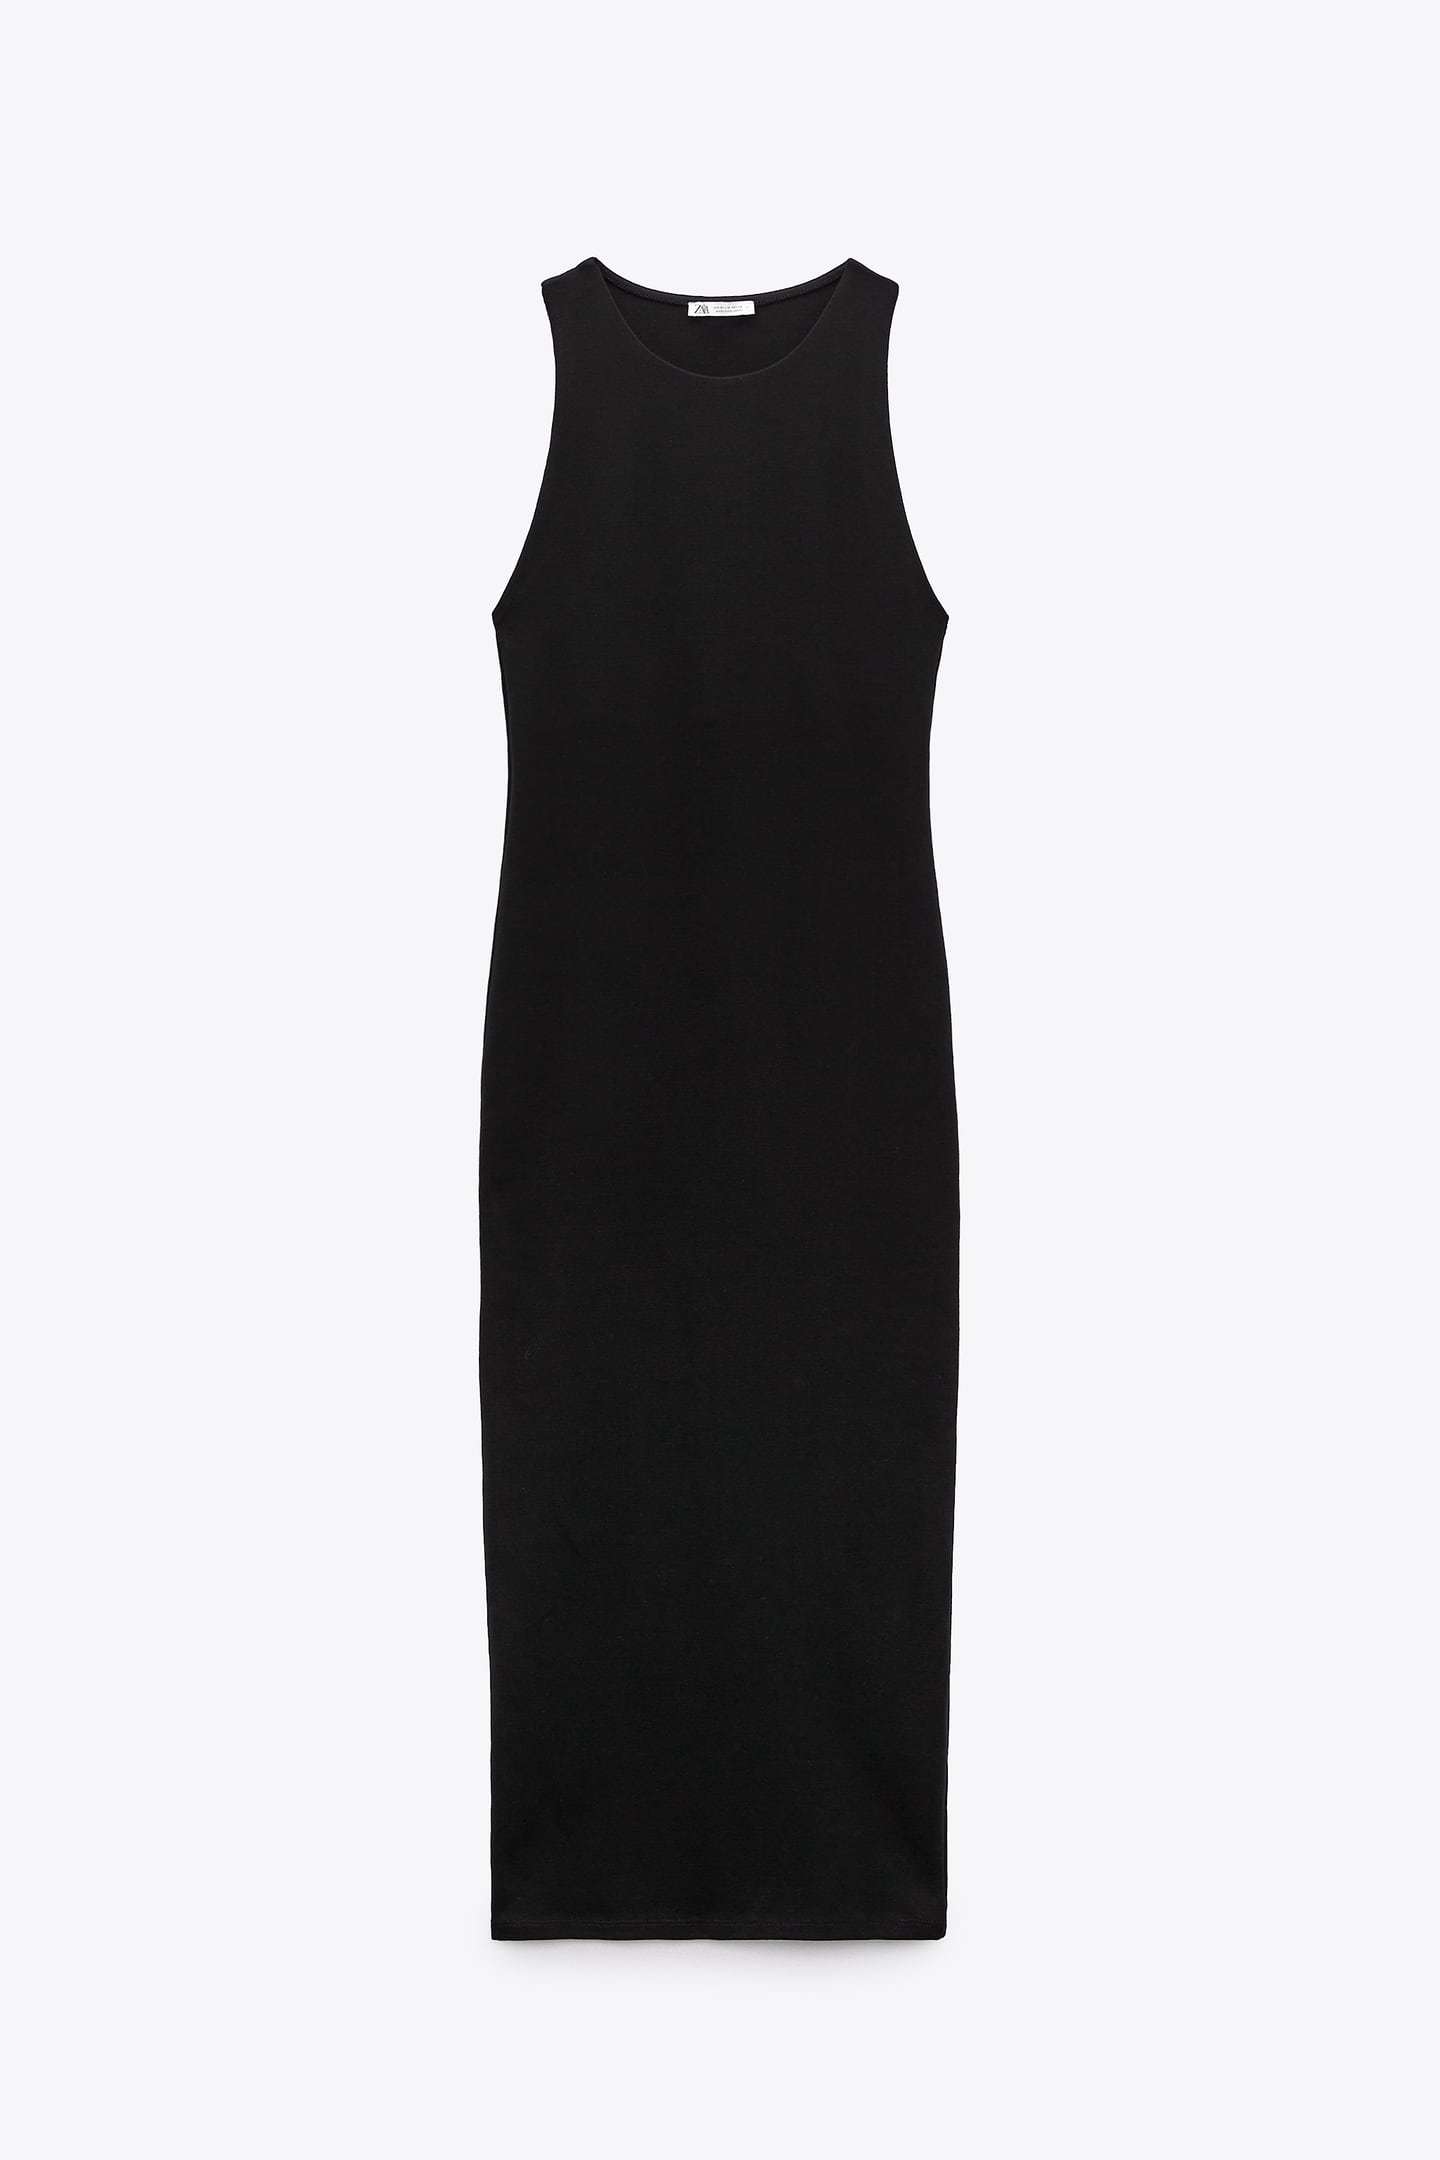 ALT: Los 10 mejores vestidos negros de Zara para resolver cualquier look